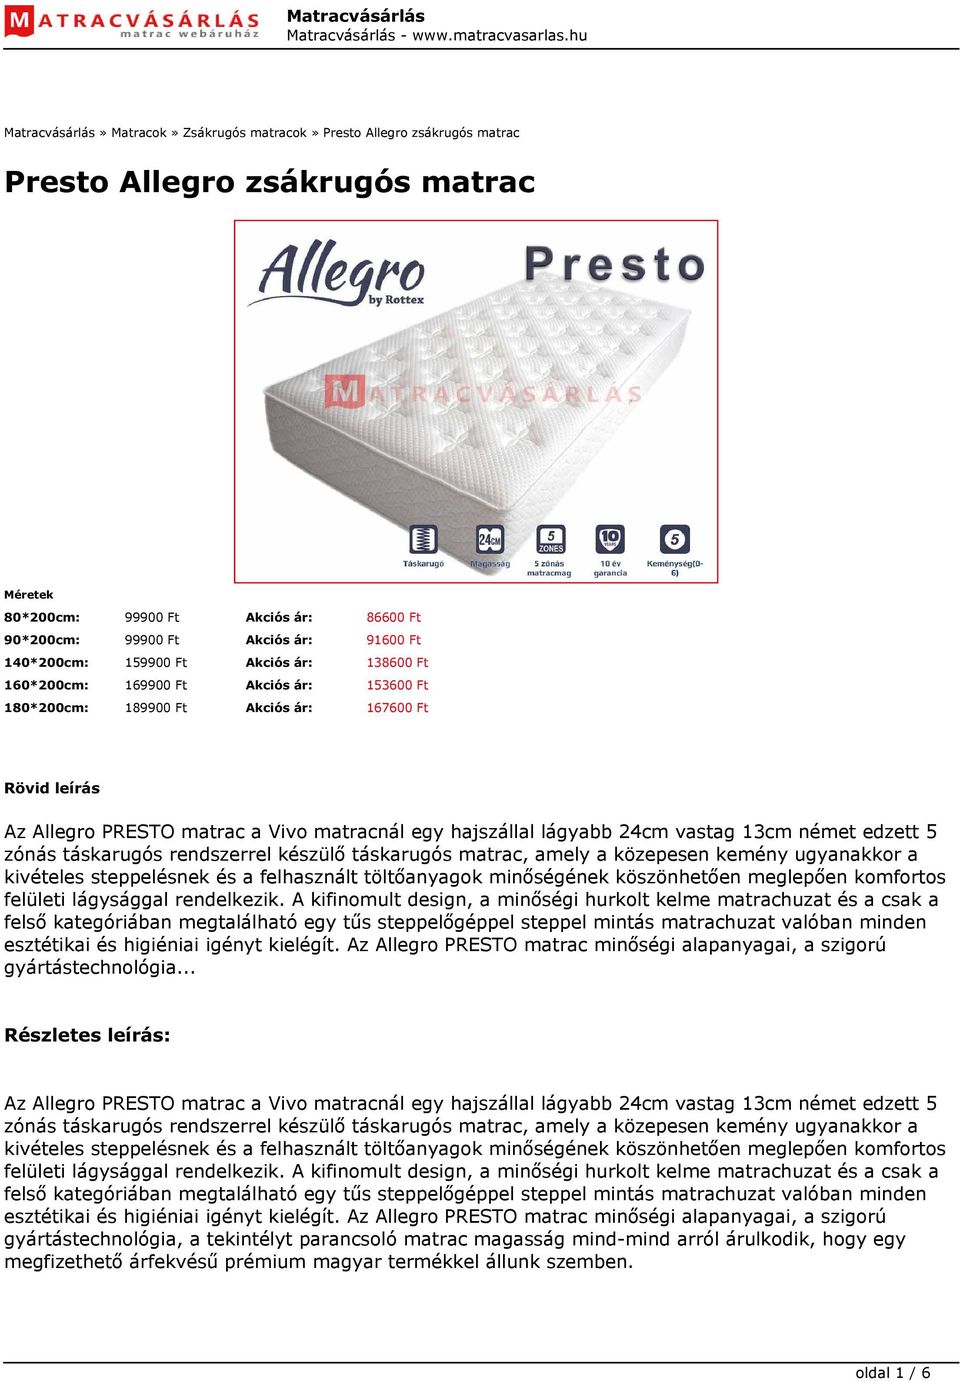 Presto Allegro zsákrugós matrac - PDF Ingyenes letöltés